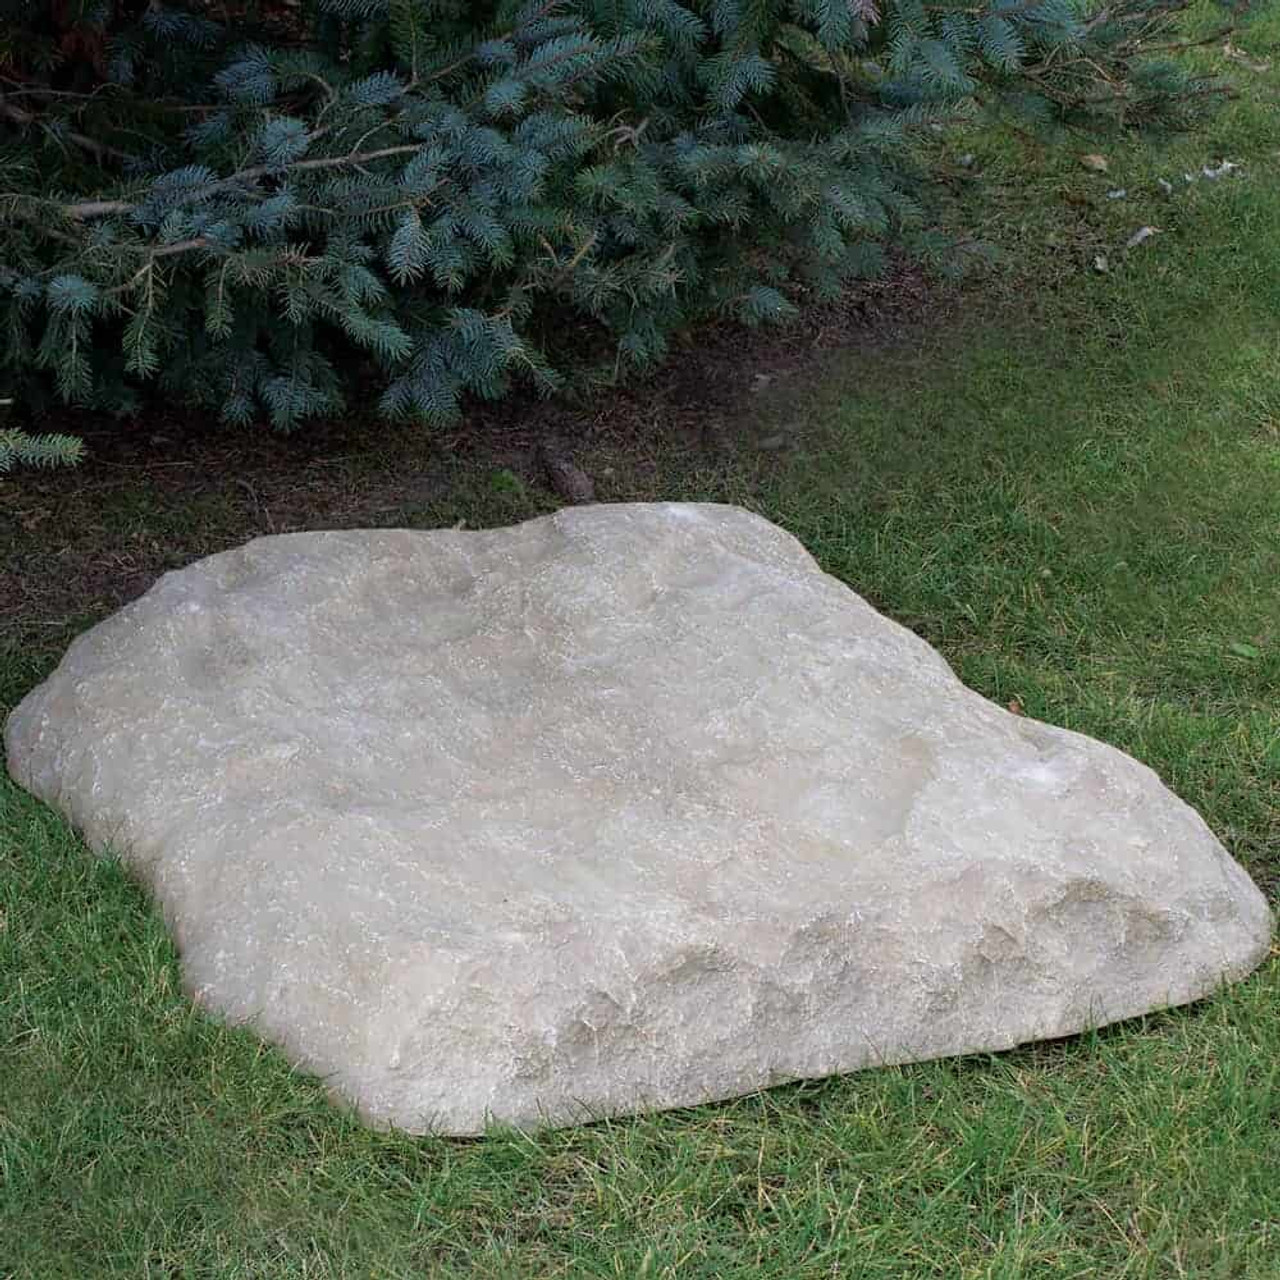 Fake rock for the beginner